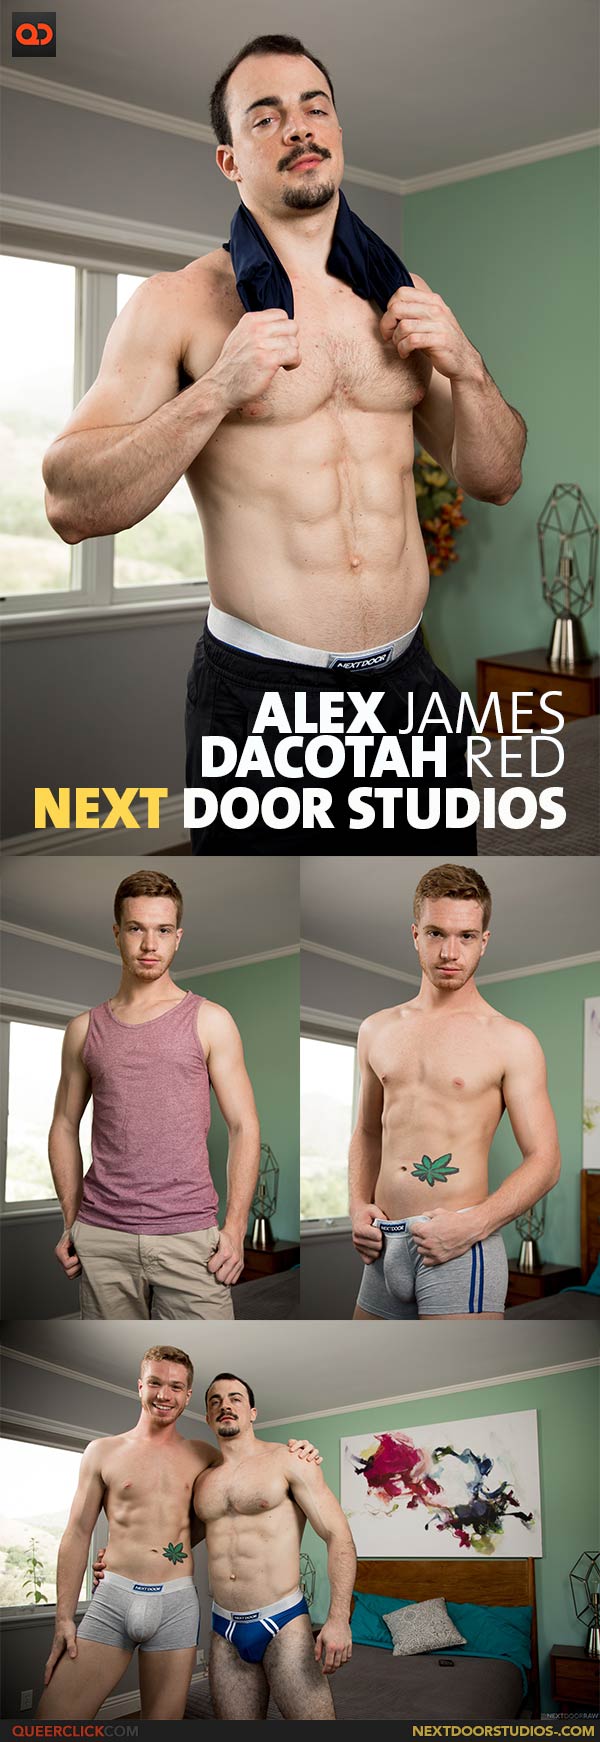 Next Door Studios:  Dacotah Red and Alex James